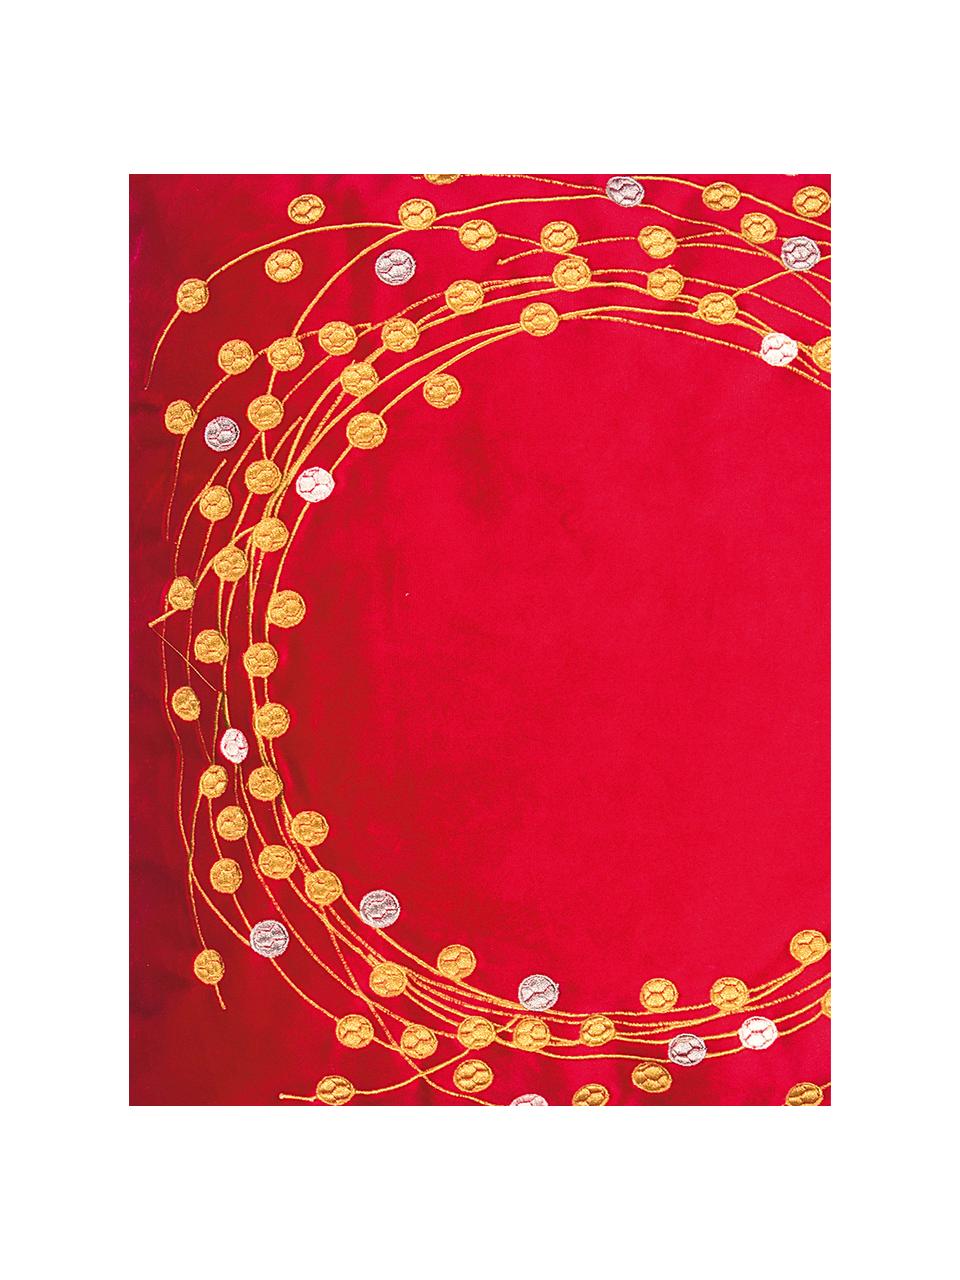 Poszewka na poduszkę z aksamitu Circle, Aksamit poliestrowy, Czerwony, odcienie złotego, S 45 x D 45 cm